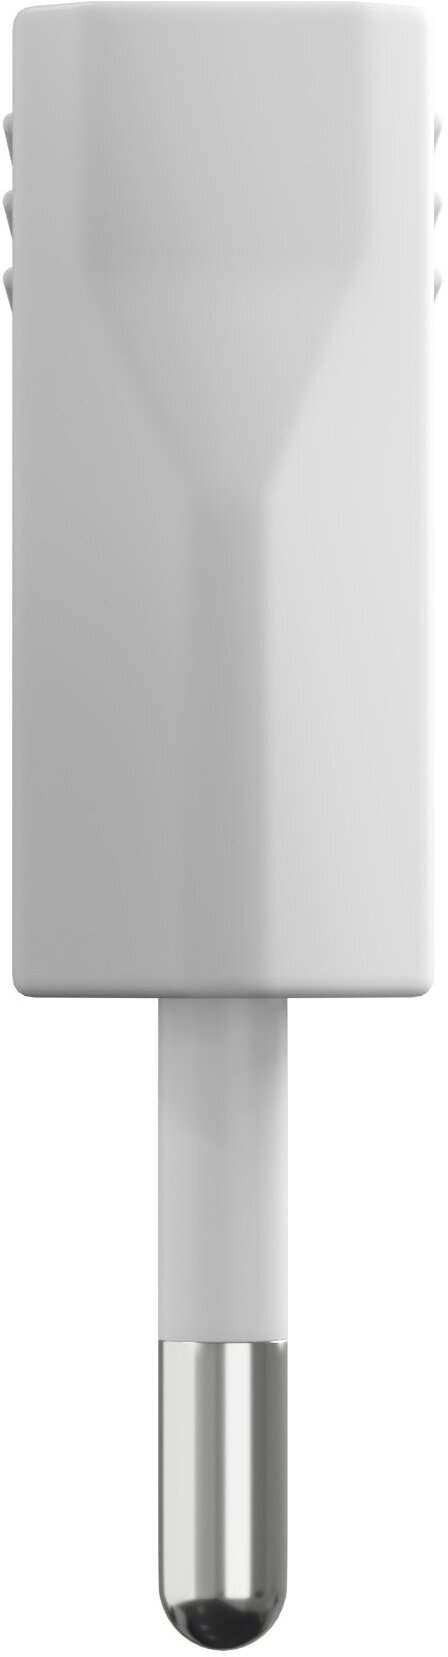 Адаптер сетевой на евровилку, евро розетку GSMIN Travel Adapter A8 переходник для американской, китайской вилки US/CN (250 В, 6А), 2шт. (Белый) - фотография № 3